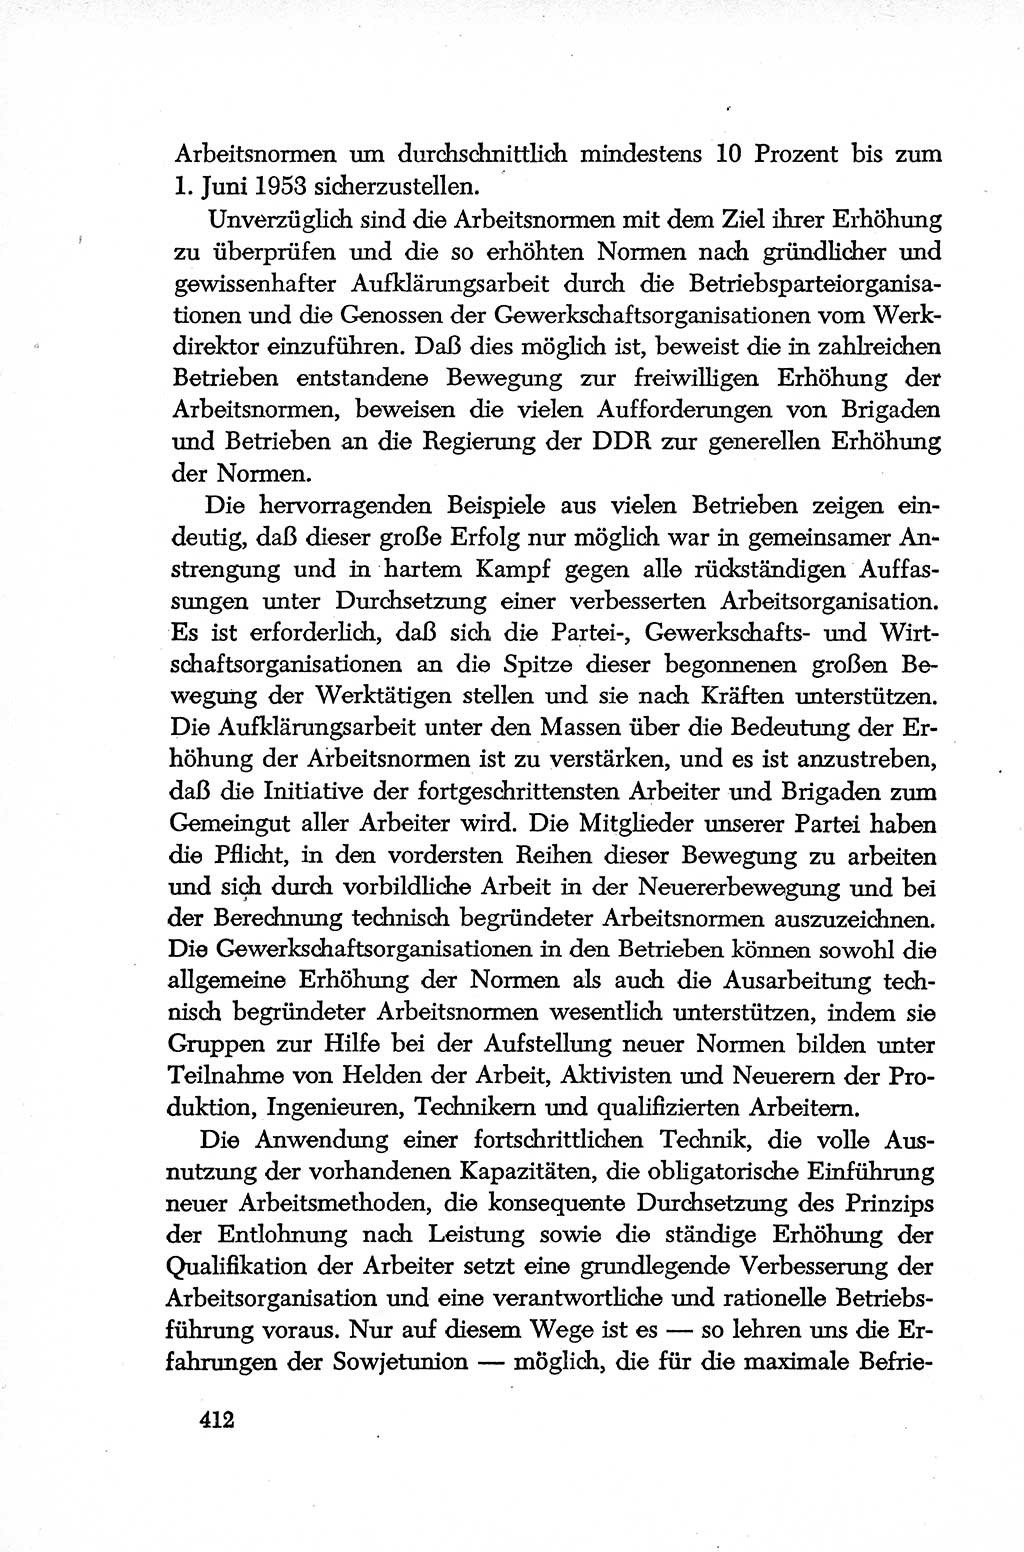 Dokumente der Sozialistischen Einheitspartei Deutschlands (SED) [Deutsche Demokratische Republik (DDR)] 1952-1953, Seite 412 (Dok. SED DDR 1952-1953, S. 412)